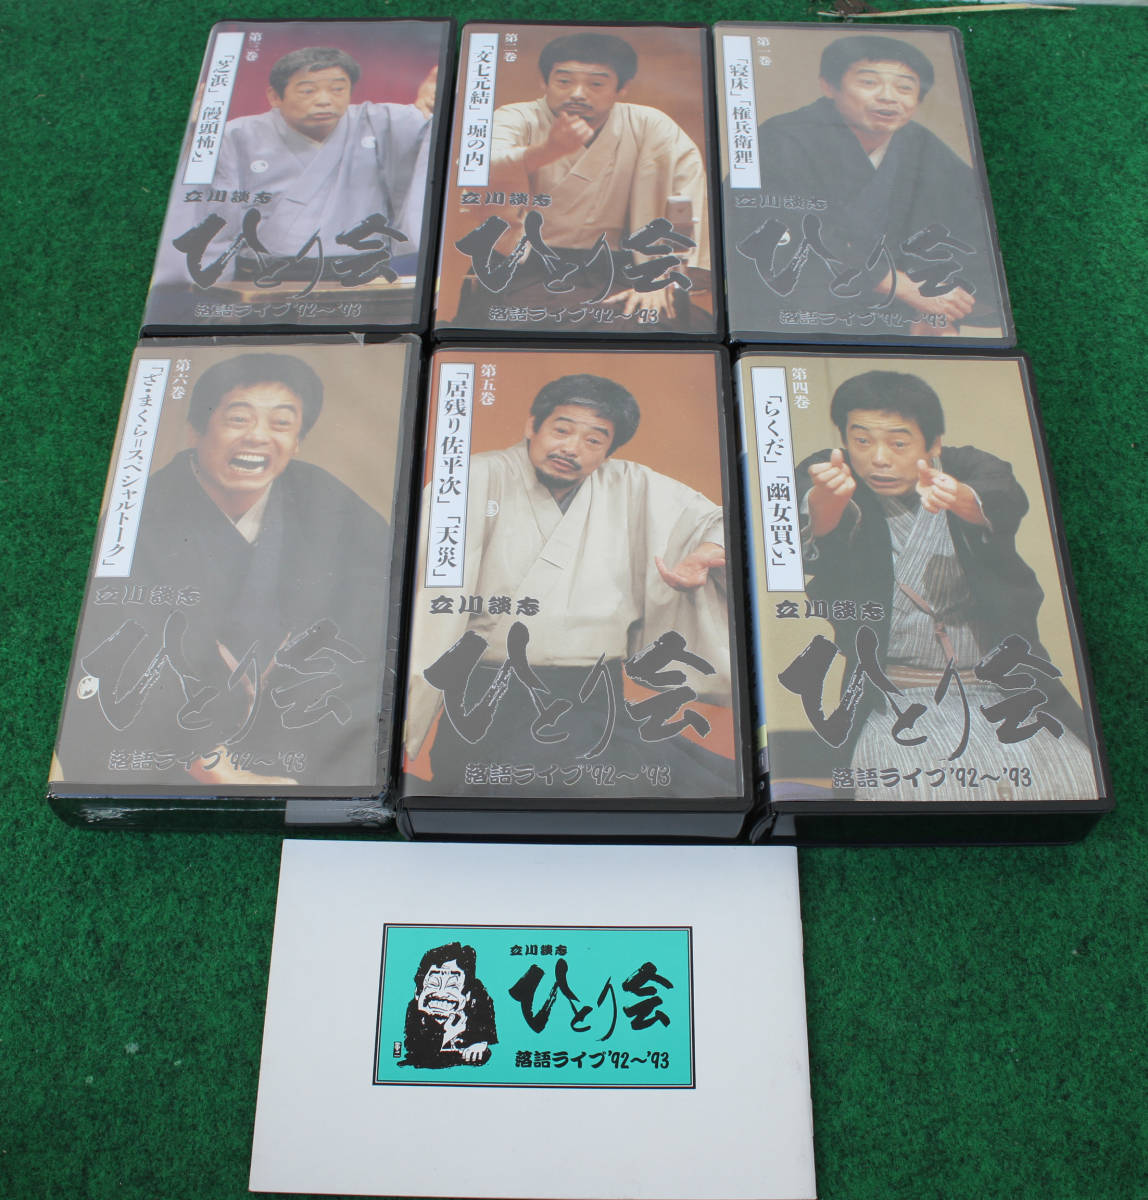  бамбук книжный магазин Tachikawa .. комические истории Live *92~*93....VHS видео 6 шт комплект 